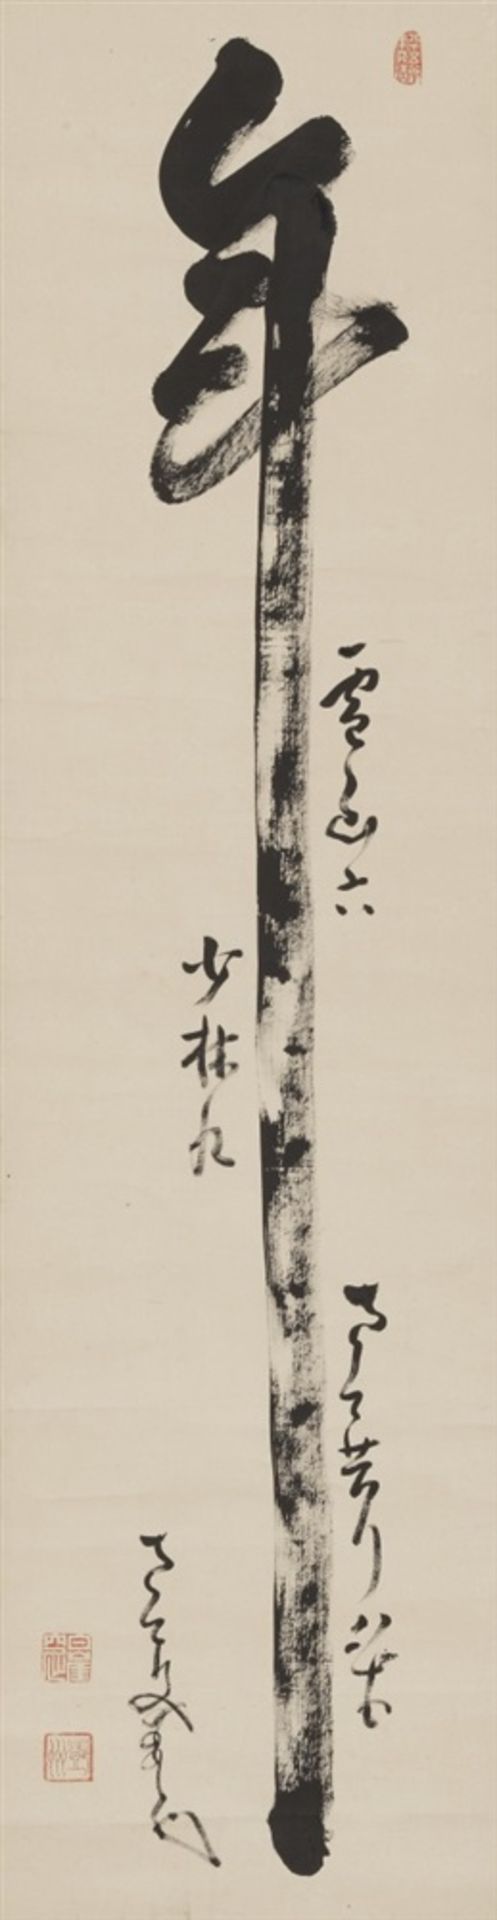 Nakahara Nantenbô (1839-1925) Hängerolle. Das Schriftzeichen "toshi" (Jahr) und Aufschrift. Tusche